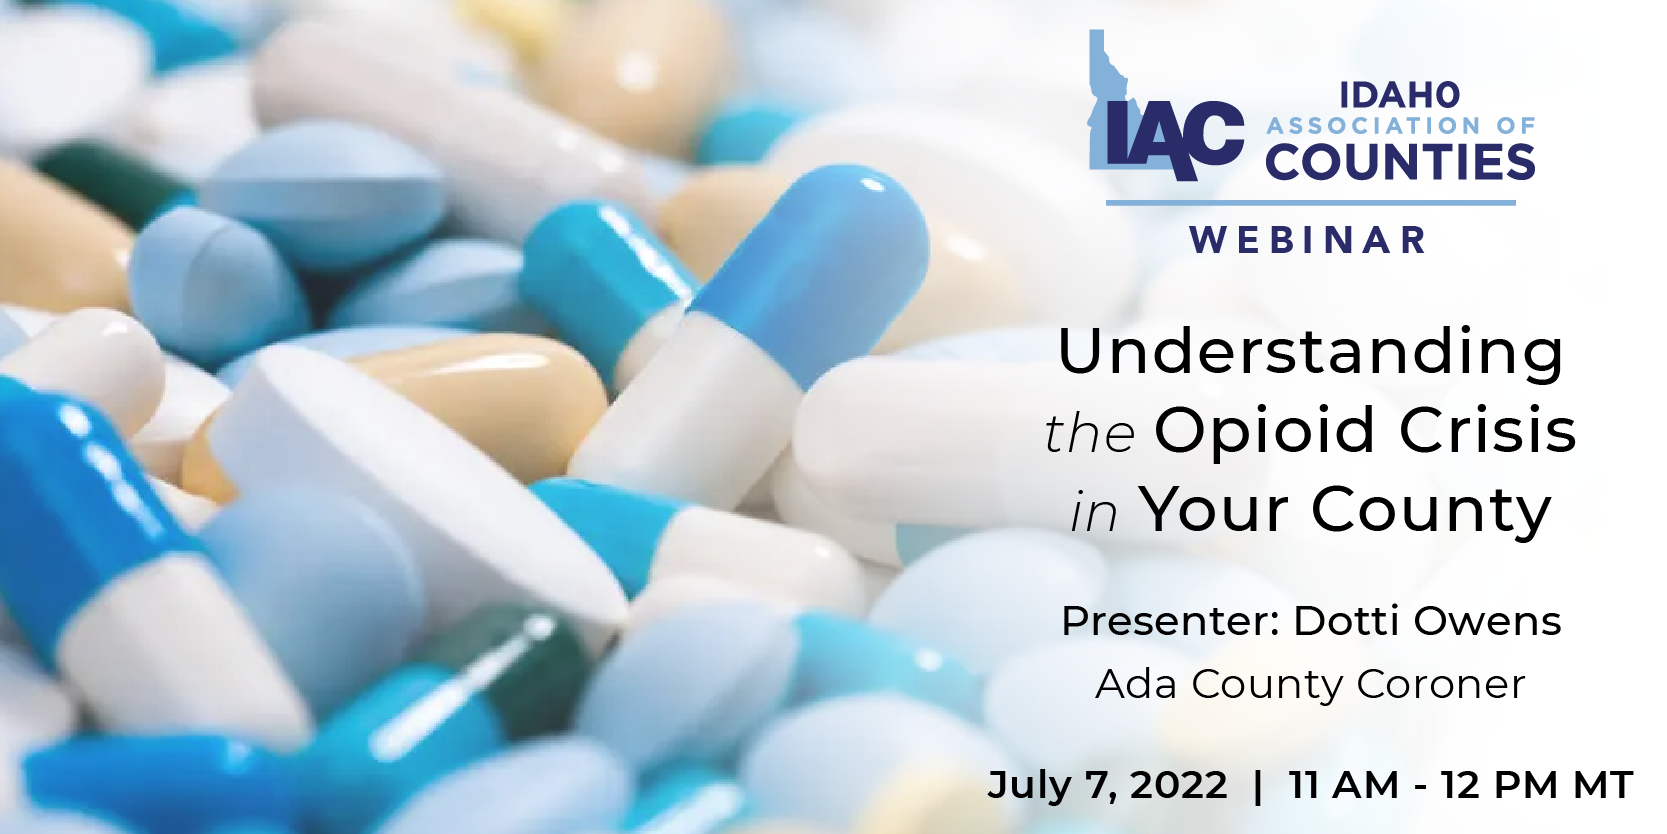 IAC Webinar: Understanding the Opioid Crisis in Your County